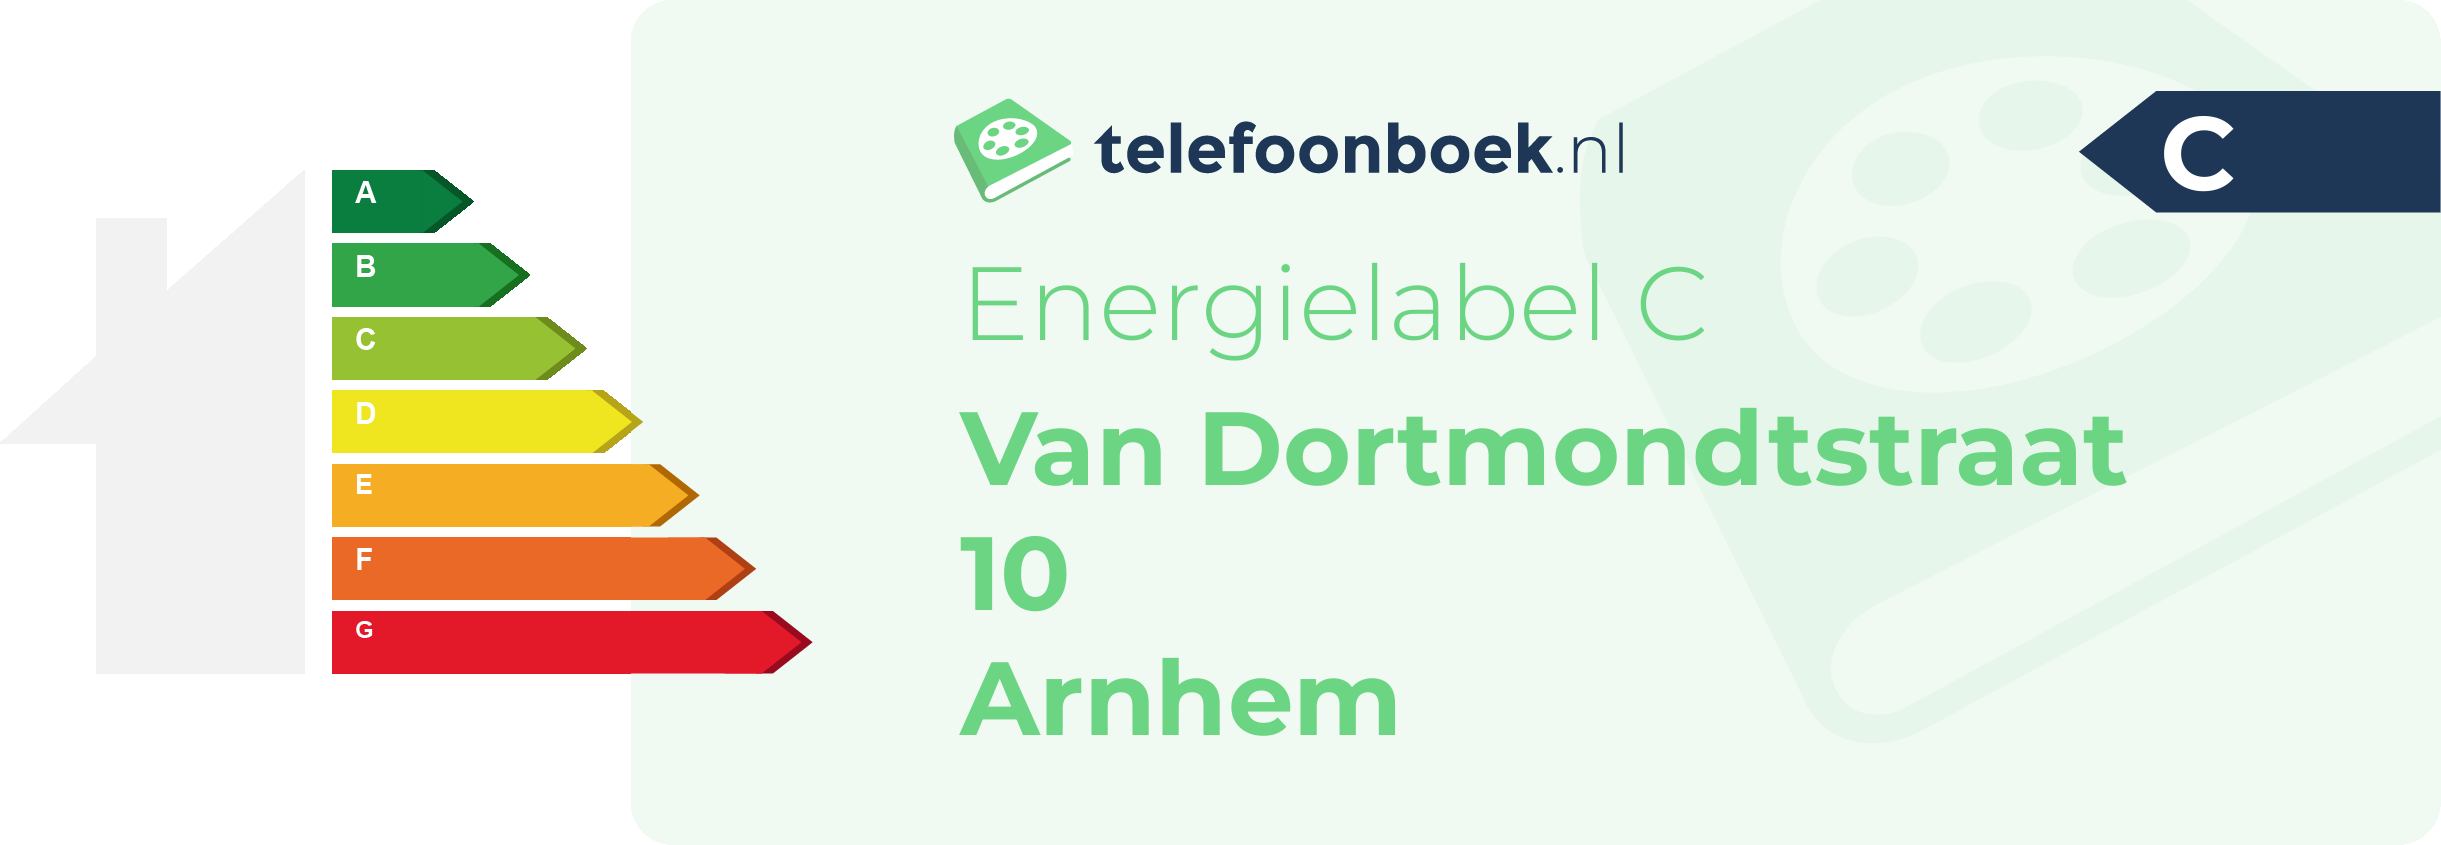 Energielabel Van Dortmondtstraat 10 Arnhem